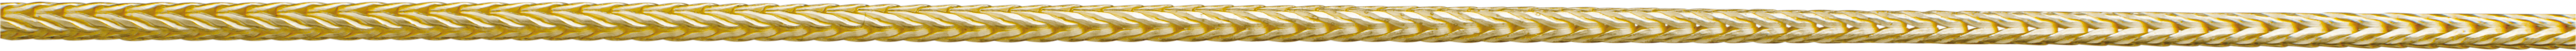 vossestaart ketting goud 585/-gg Ø 1,50mm